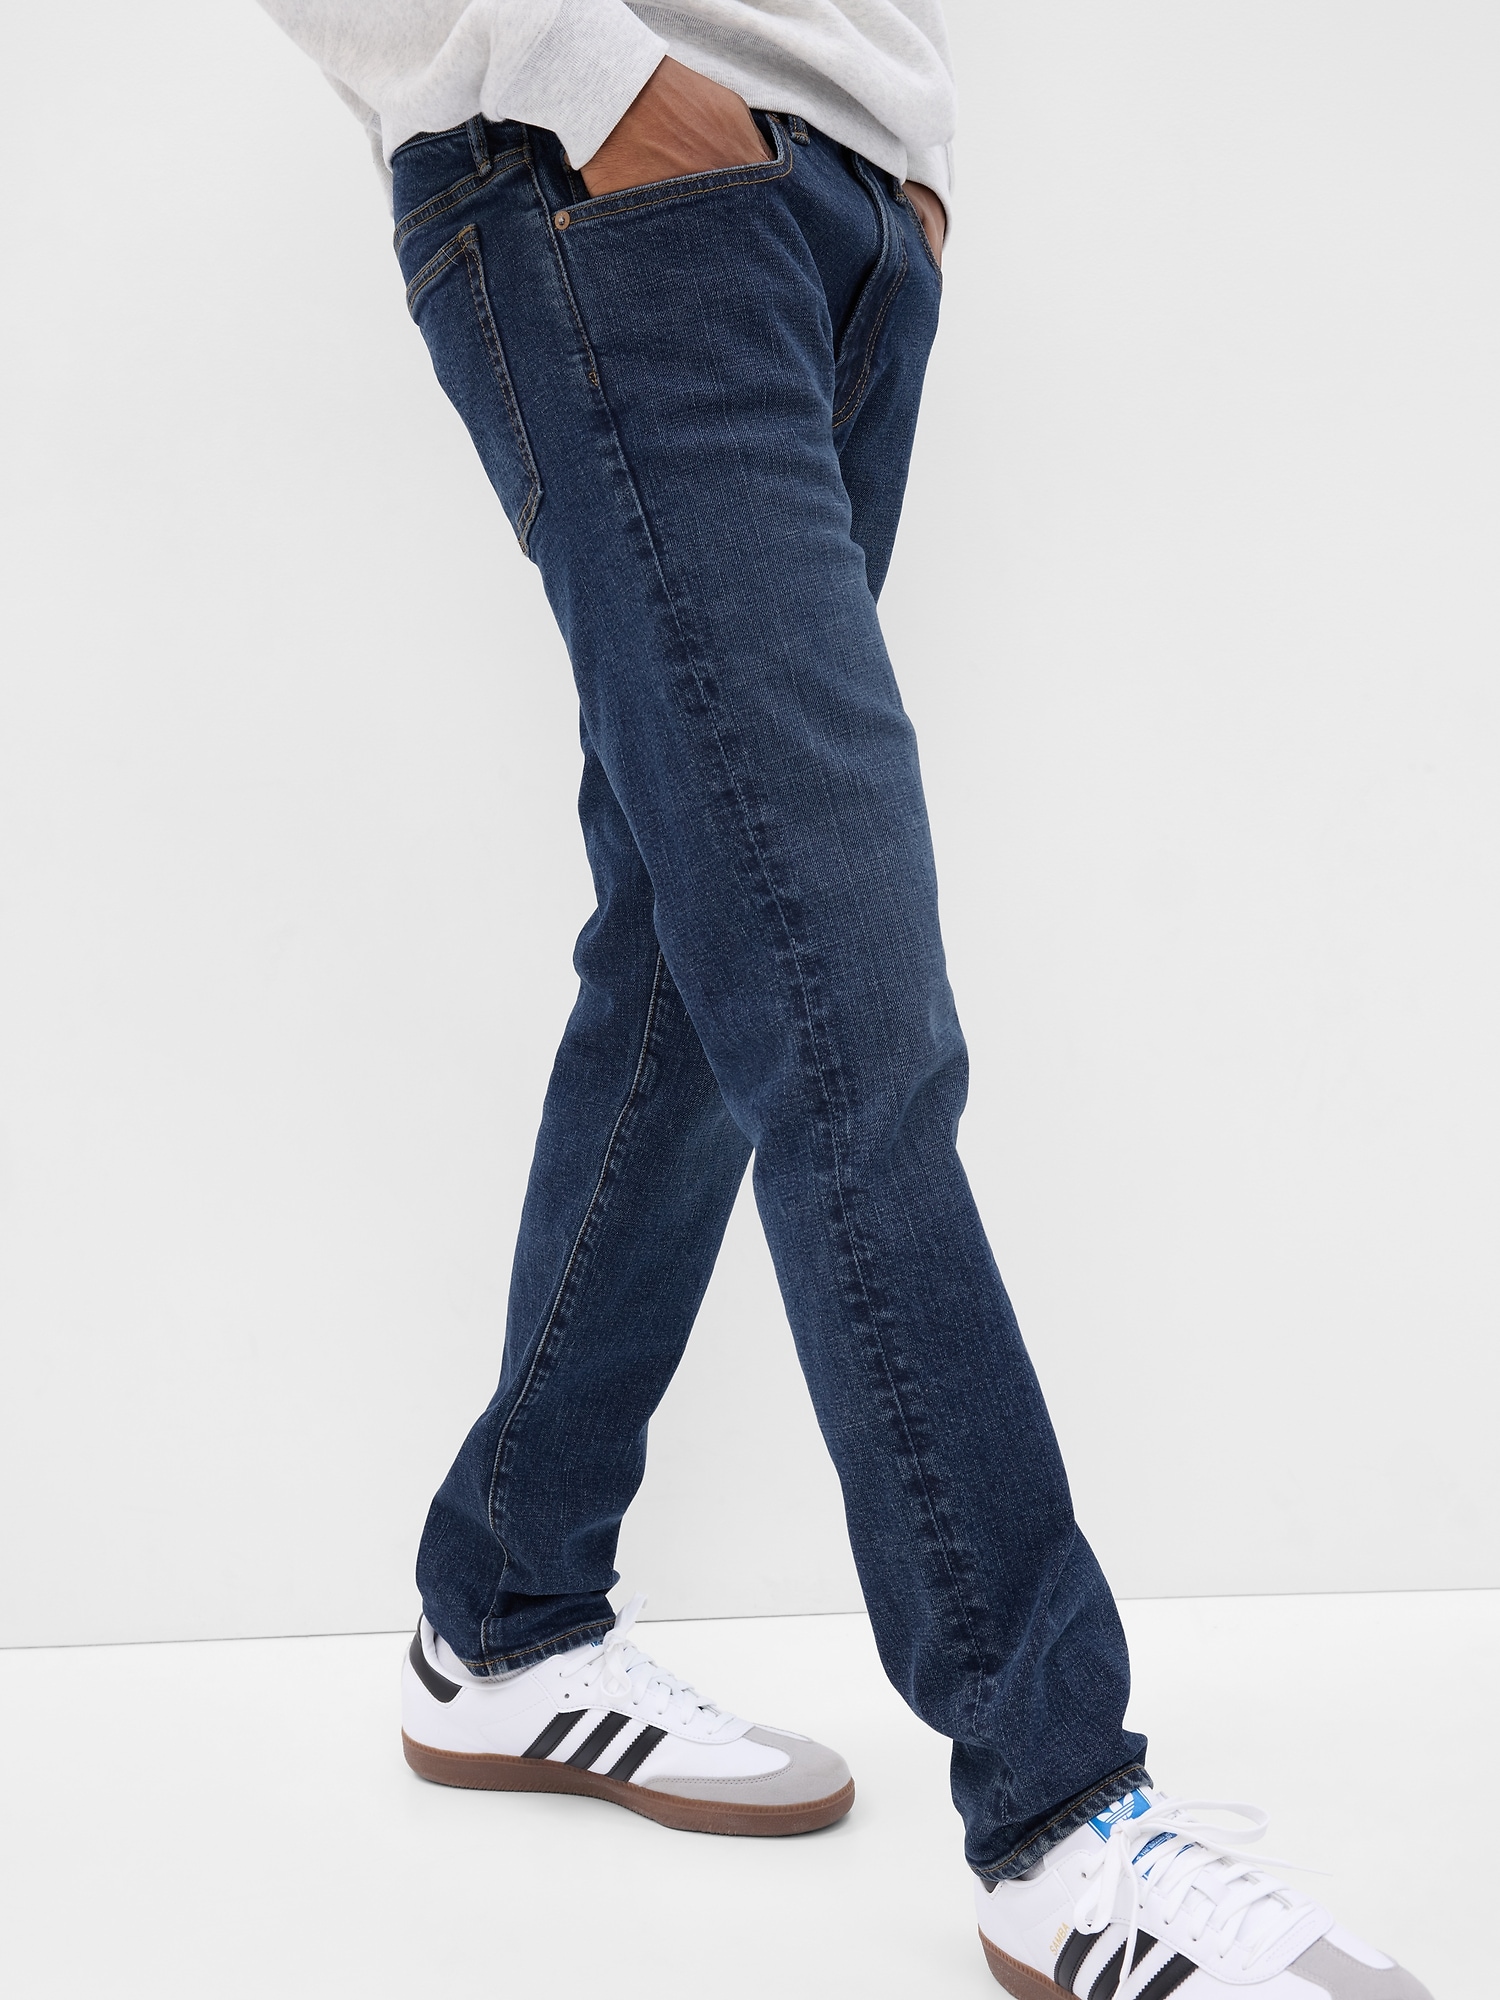 Men's Gapflex Jeans - Gem